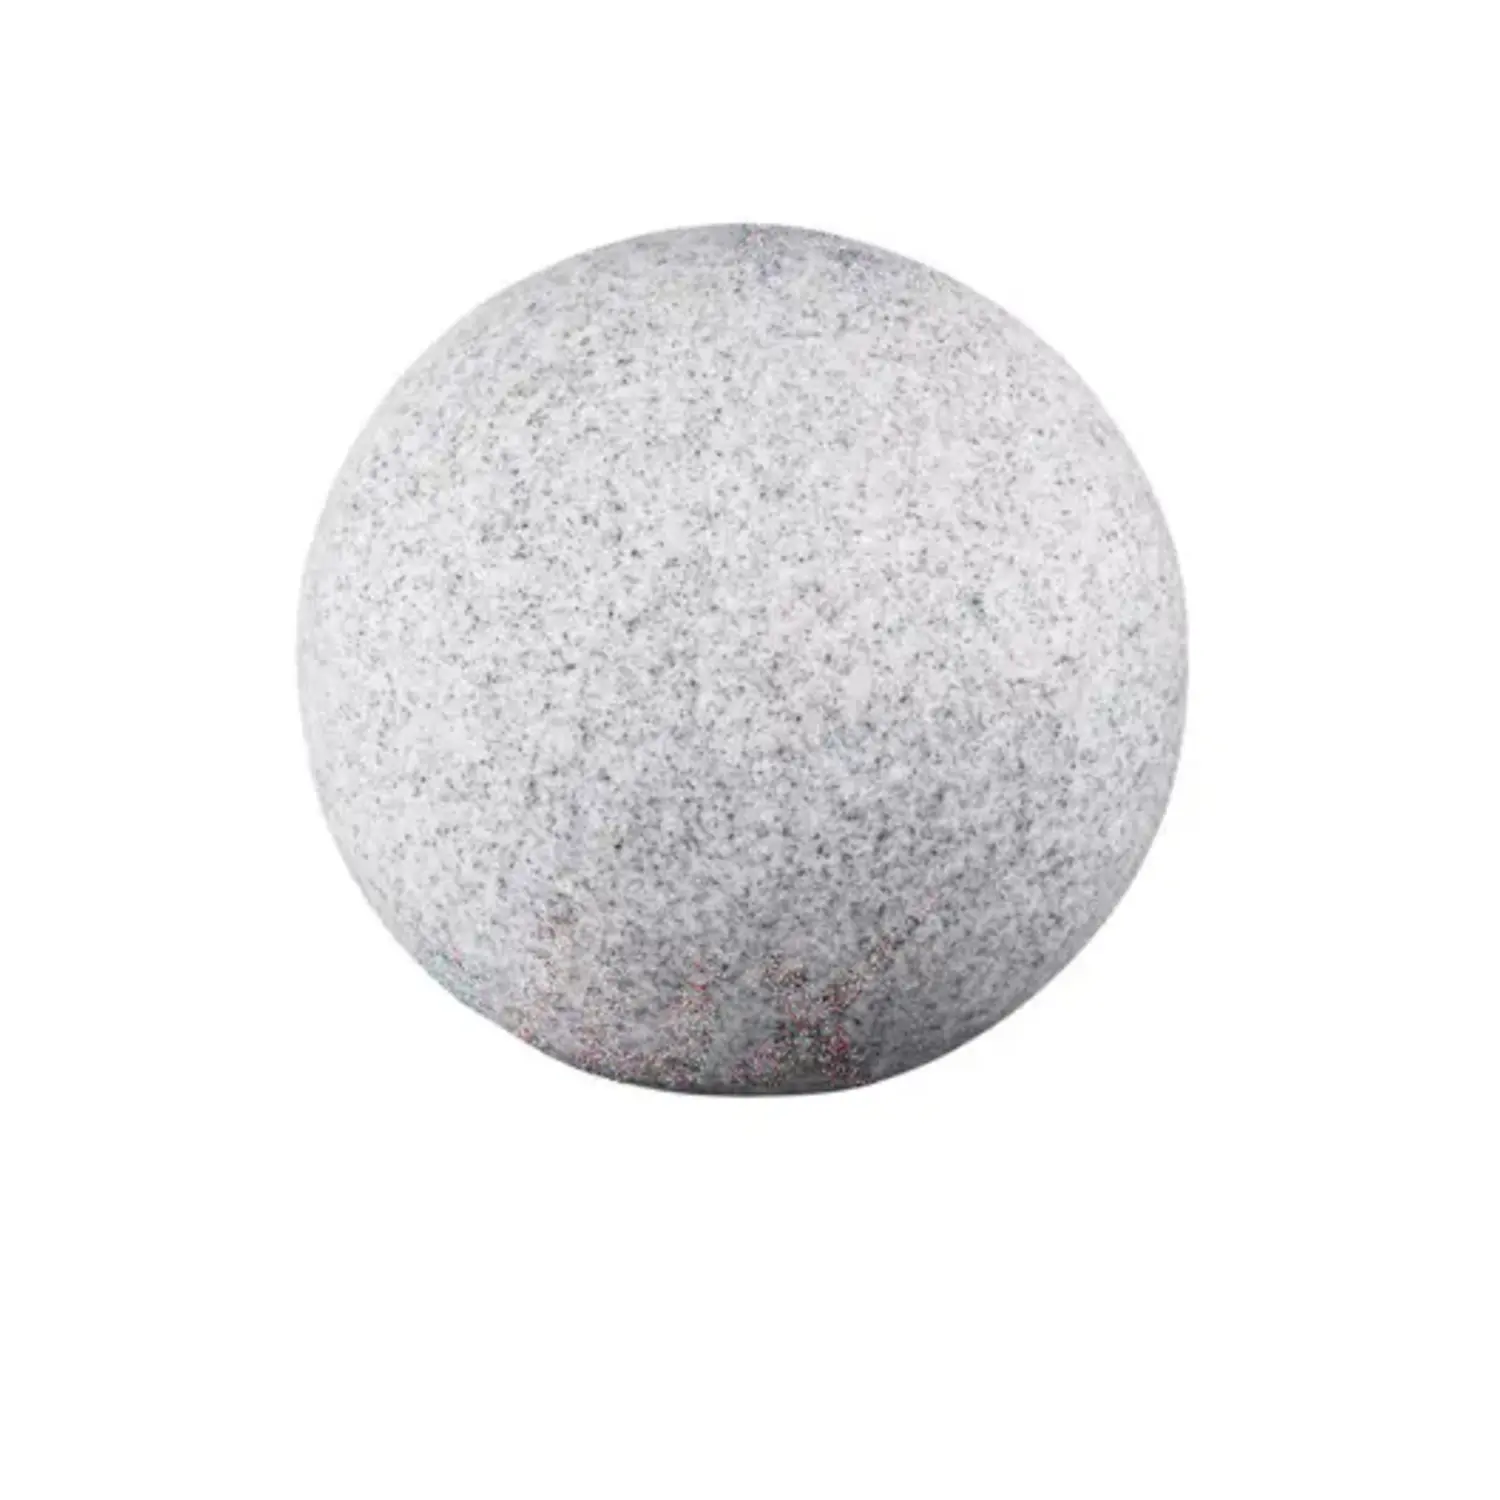 immagine del prodotto lampada da giardino sfera finta pietra IP65 granito esterno E27 CE 220-240 volt 200 mm kan 24654